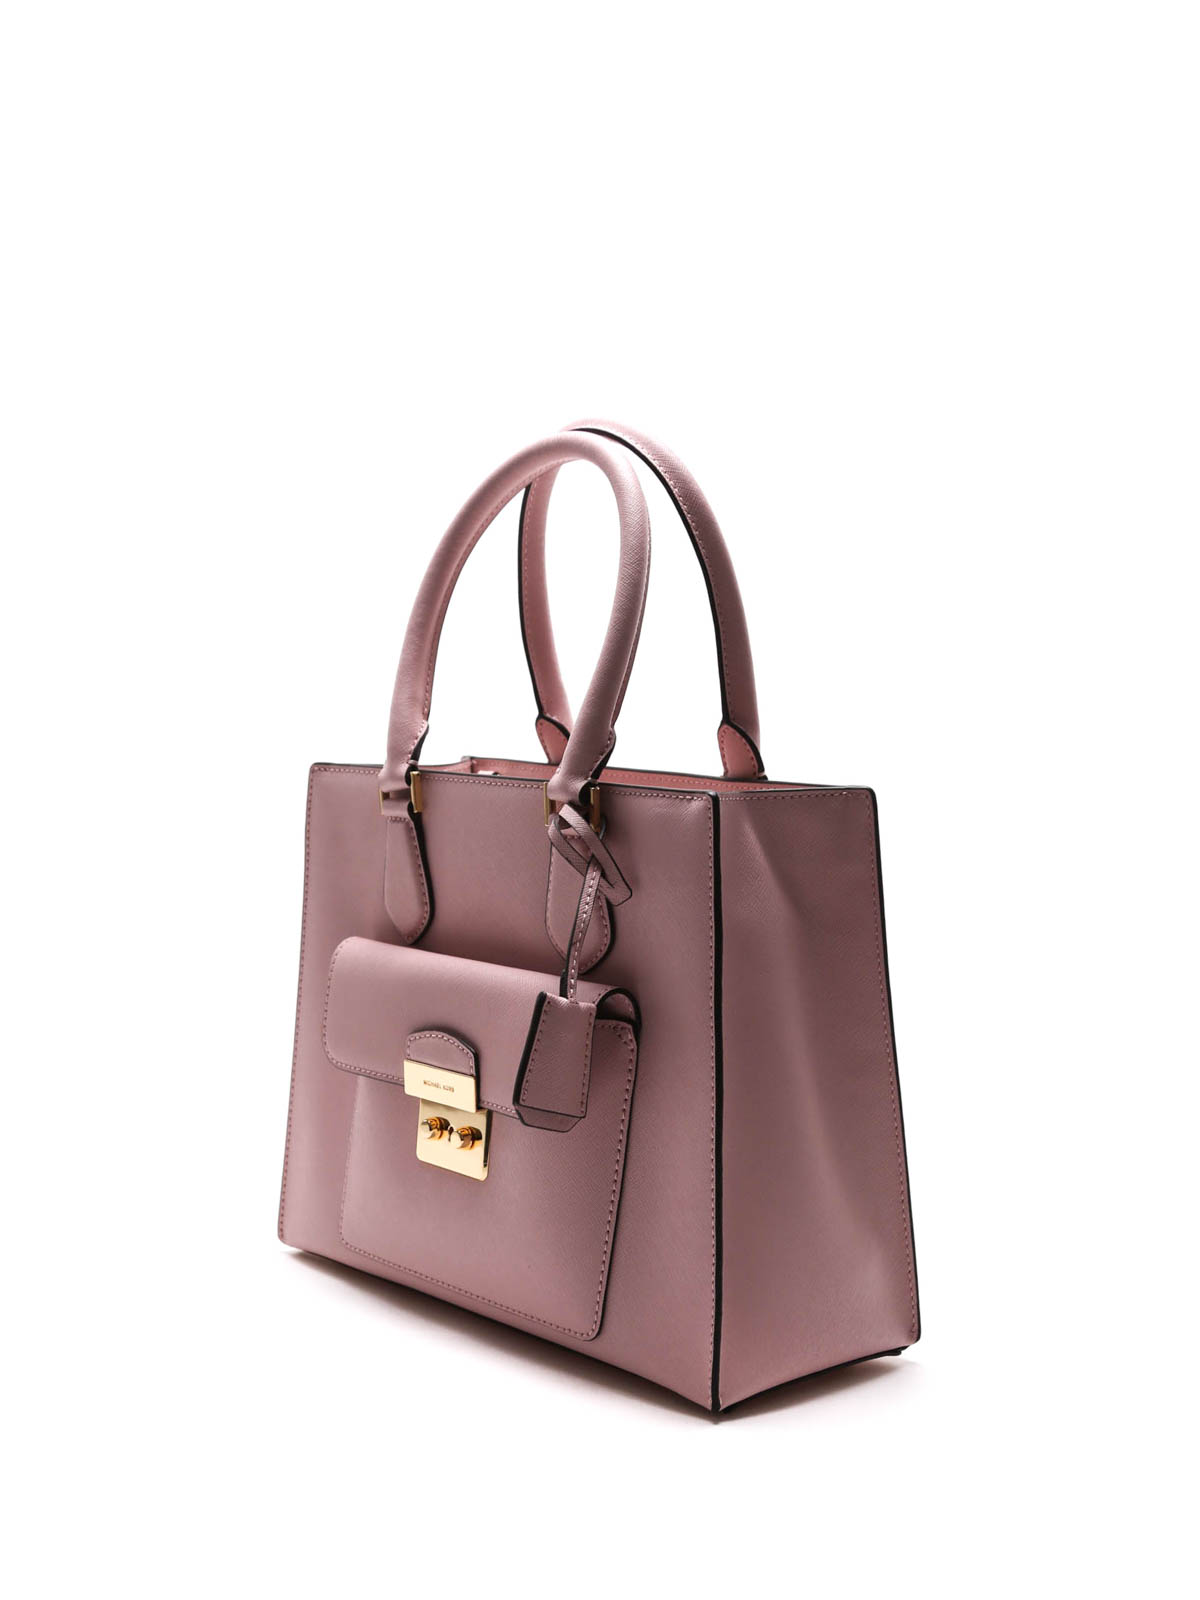 Totes bags Michael Kors - Bridgette leather handbag - 30T6GBDT2L656